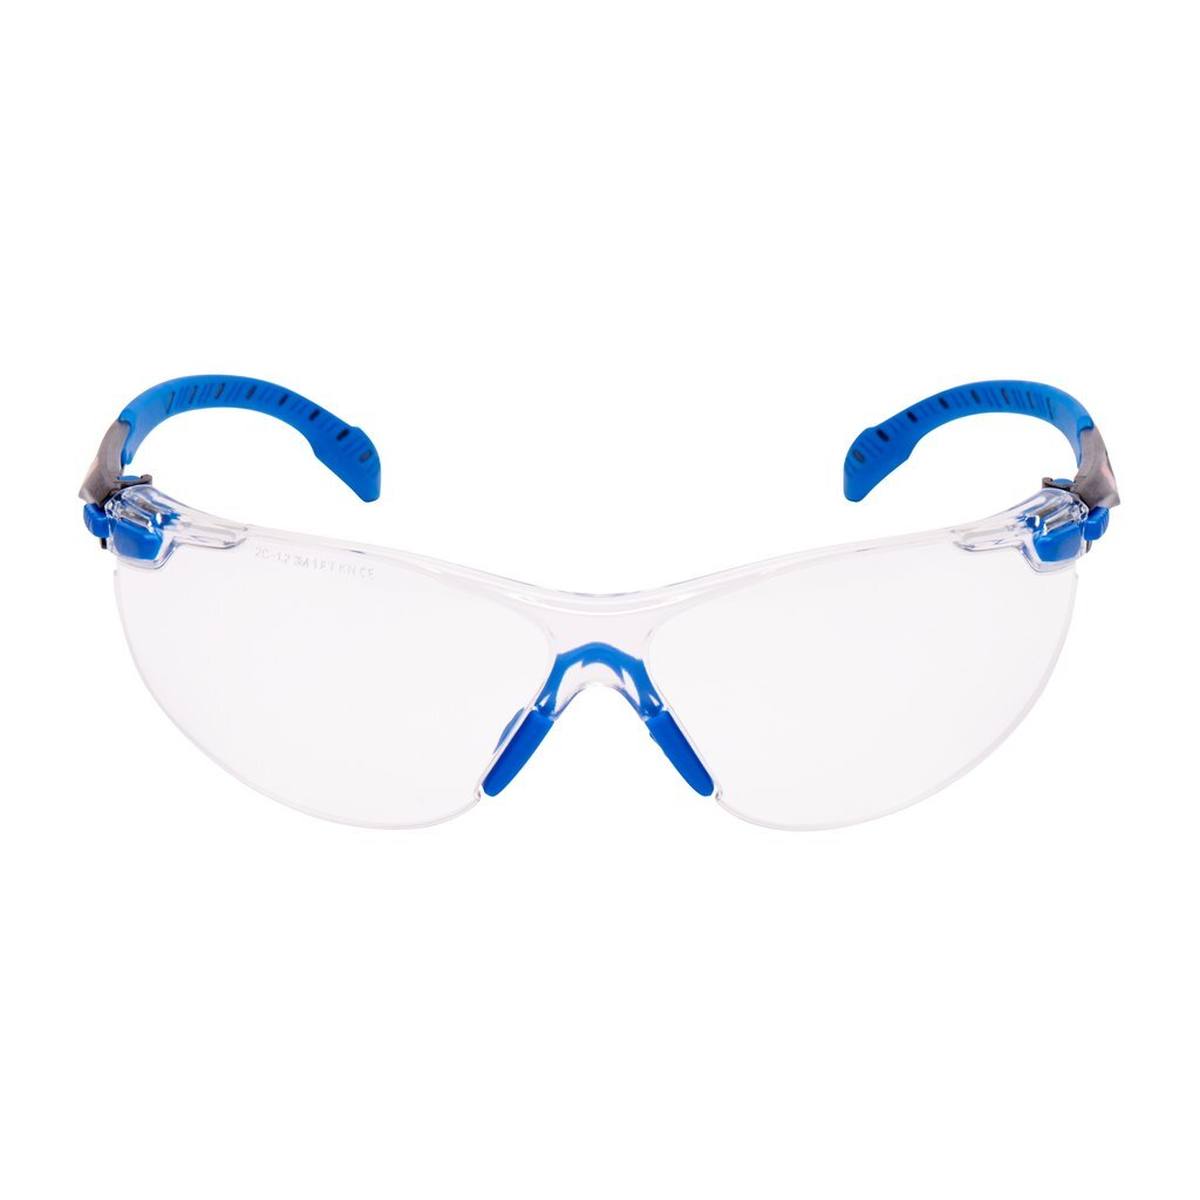 3M Solus 1000 Schutzbrille, blau/schwarze Bügel, Scotchgard Anti-Fog-/Antikratz-Beschichtung (K&N), transparente Scheibe, S1101SGAF-EU